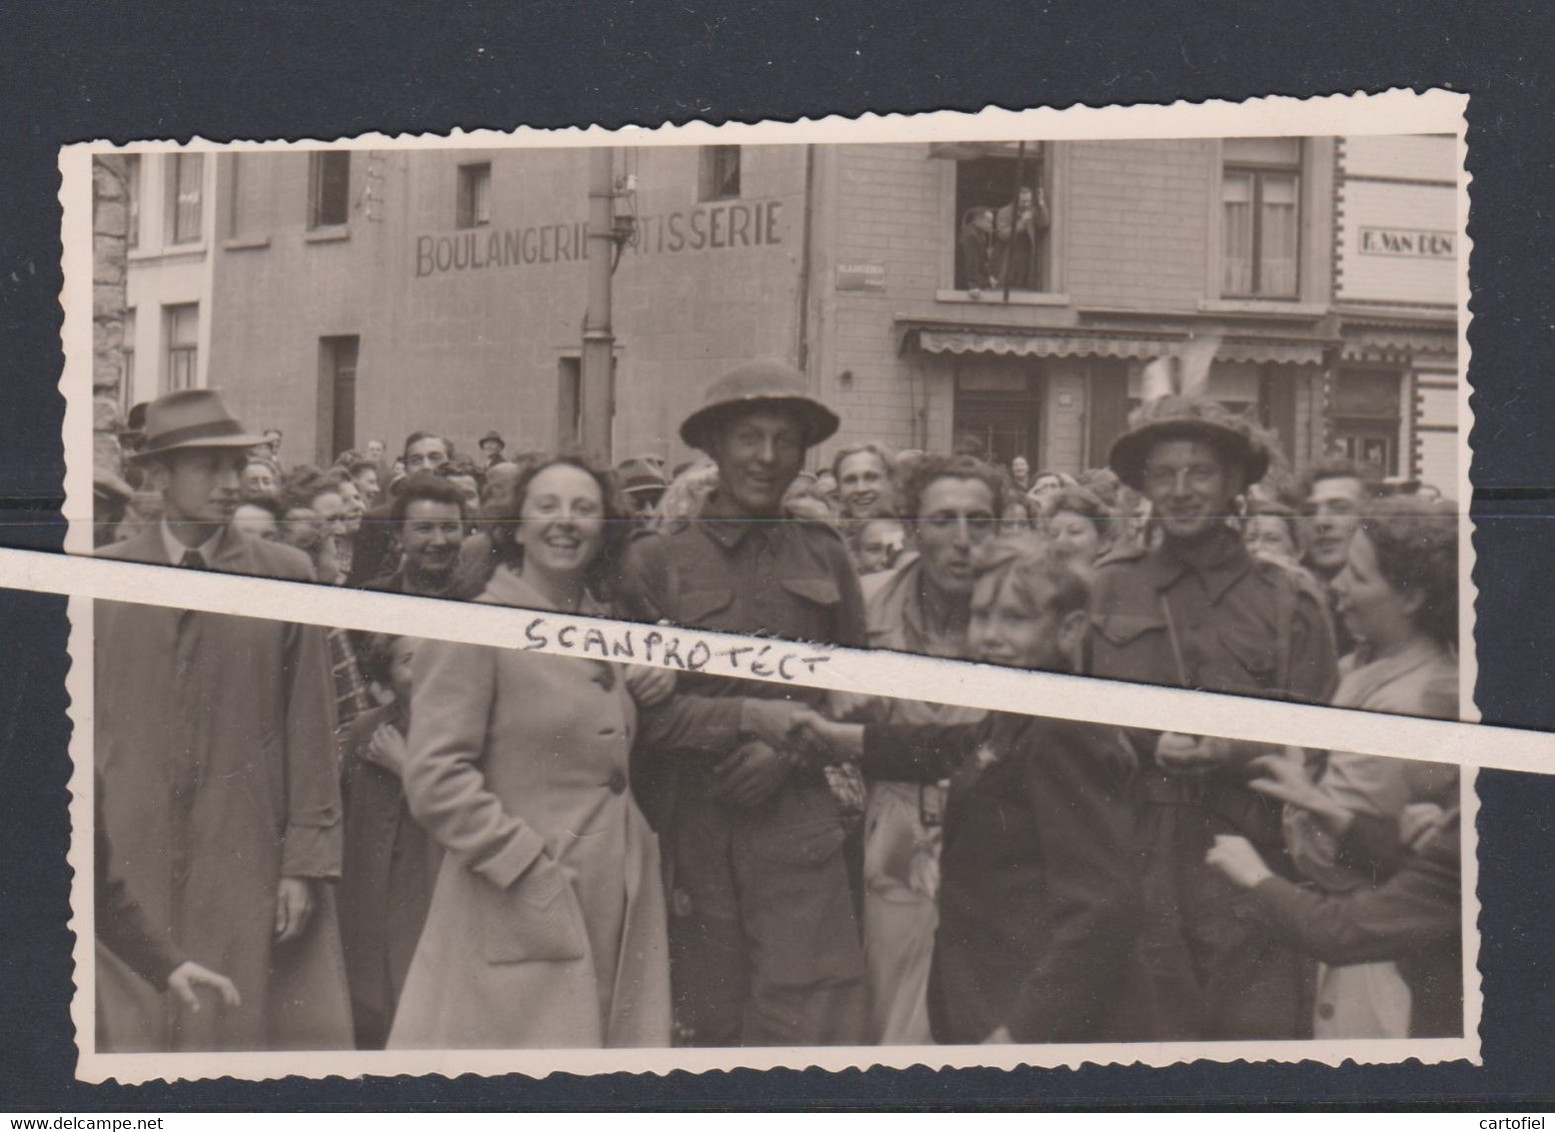 VILVOORDE-HOEK-VLAANDERENSTRAAT-OORLOG-BEVRIJDING-1944-SOLDATEN-ORIGINELE+HISTORISCHE-ICONISCHE-FOTO+-9-14 CM-UNIEK! - Vilvoorde